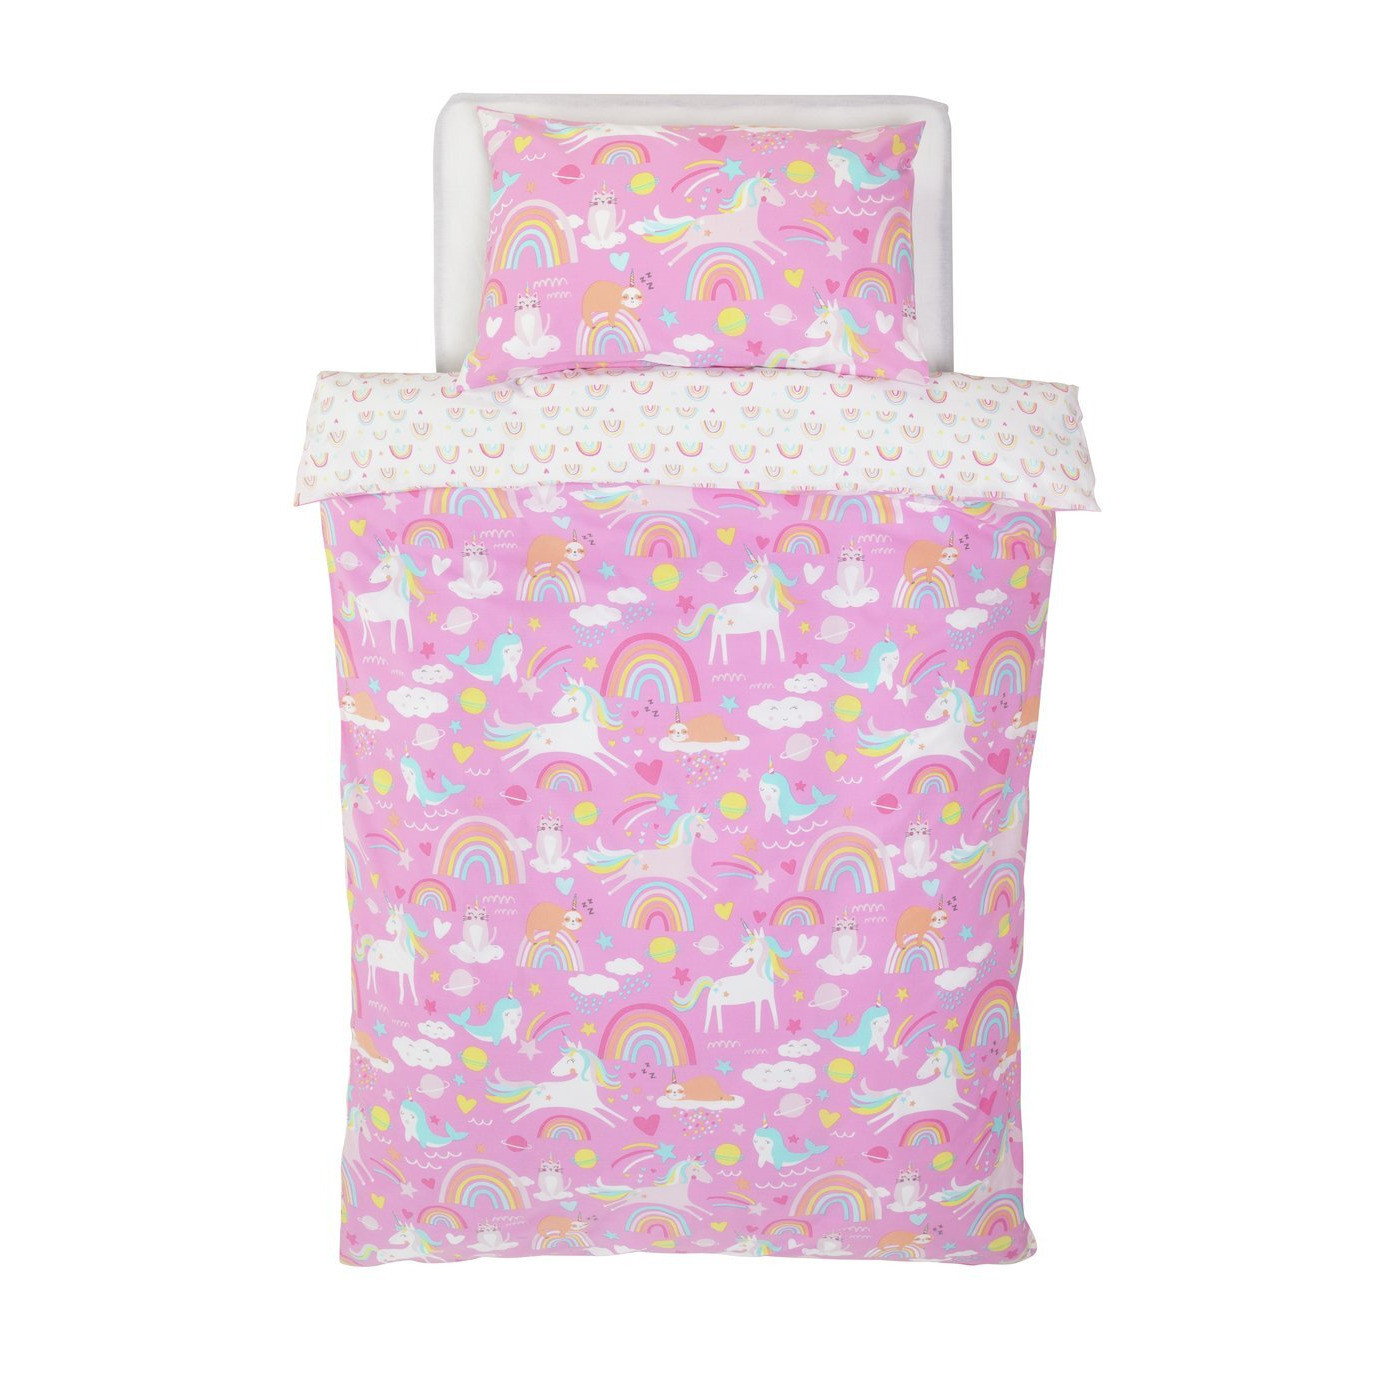 Argos Home Kids Pink Unicorn Bedding Set - Toddler - image 1